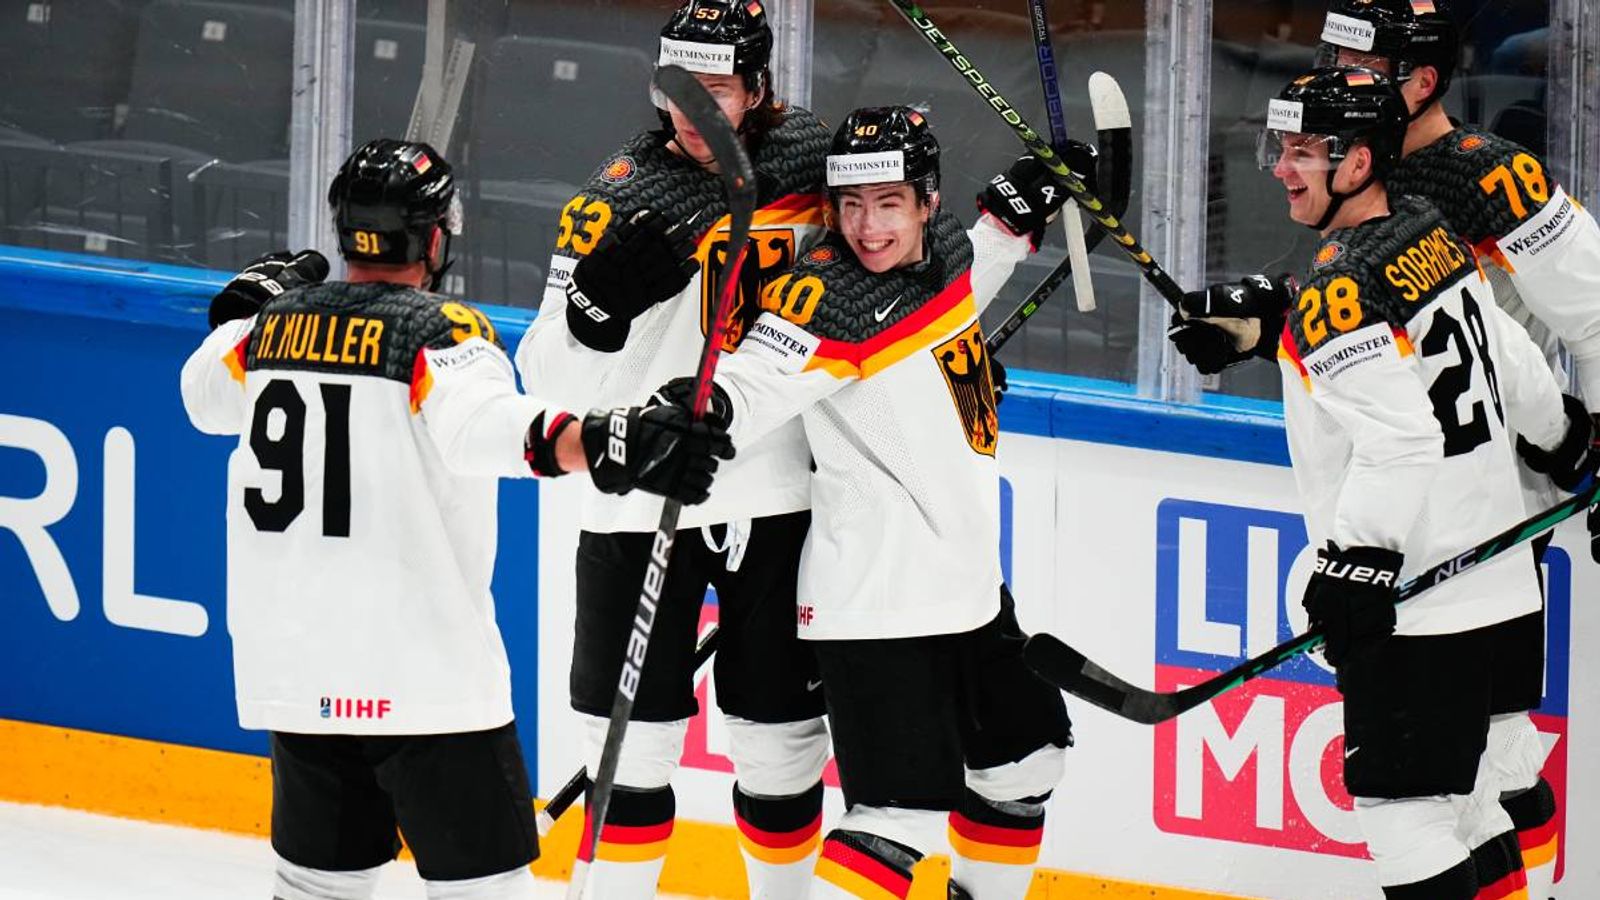 Eishockey-WM Deutschland gewinnt gegen Dänemark Eishockey News Sky Sport